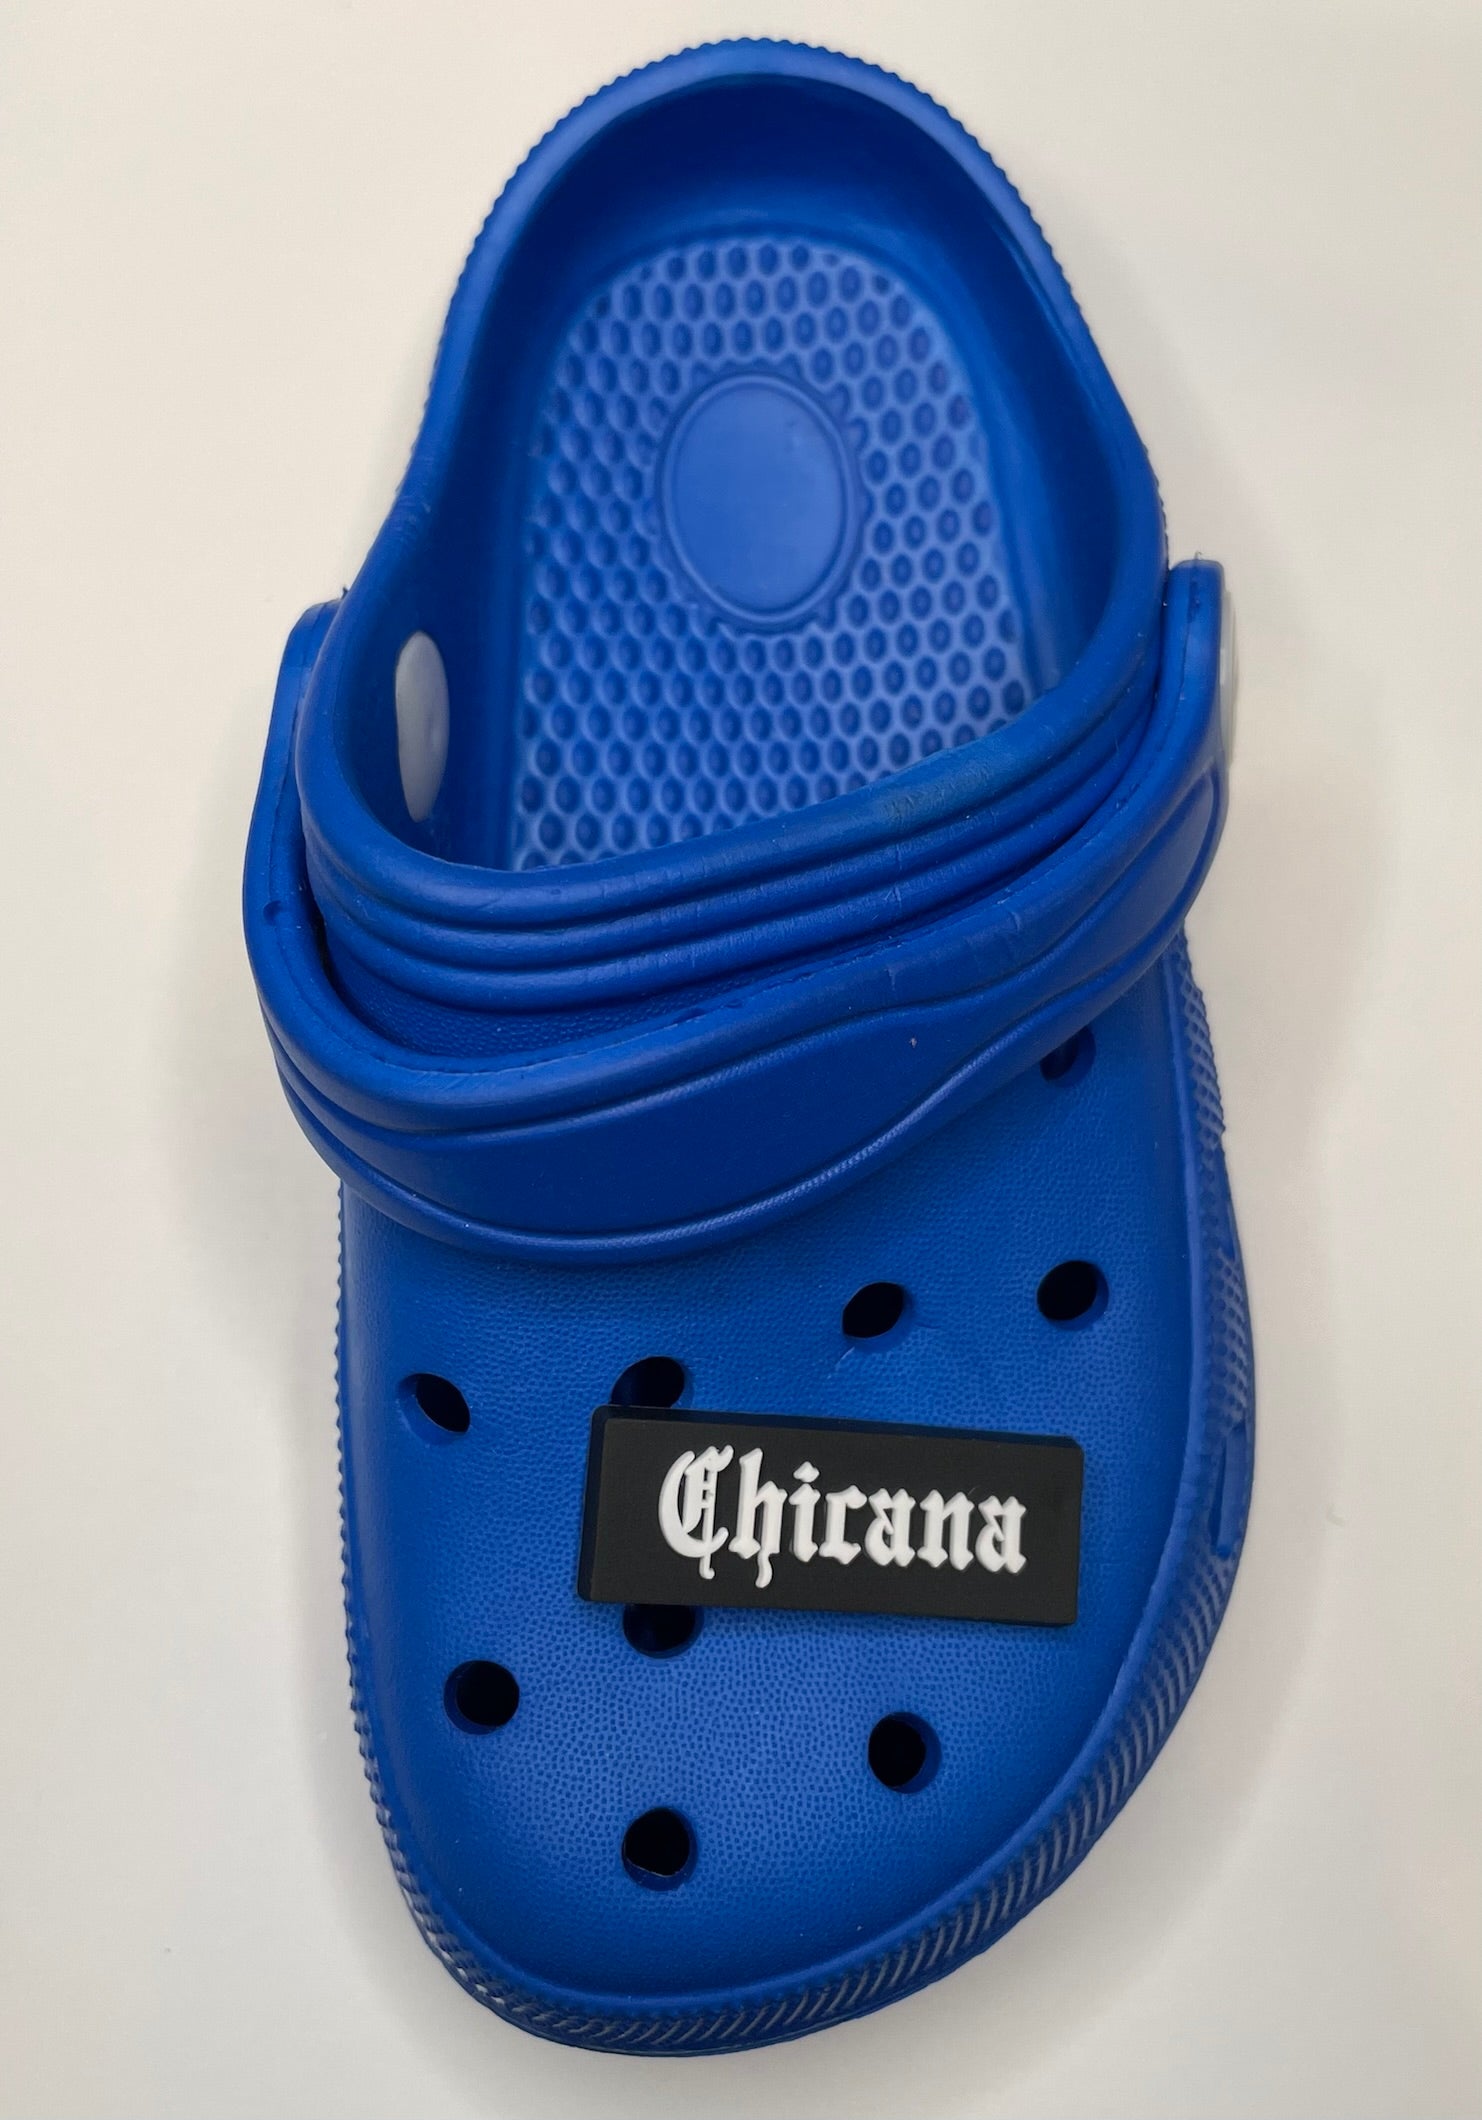 Chicana Shoe Charm